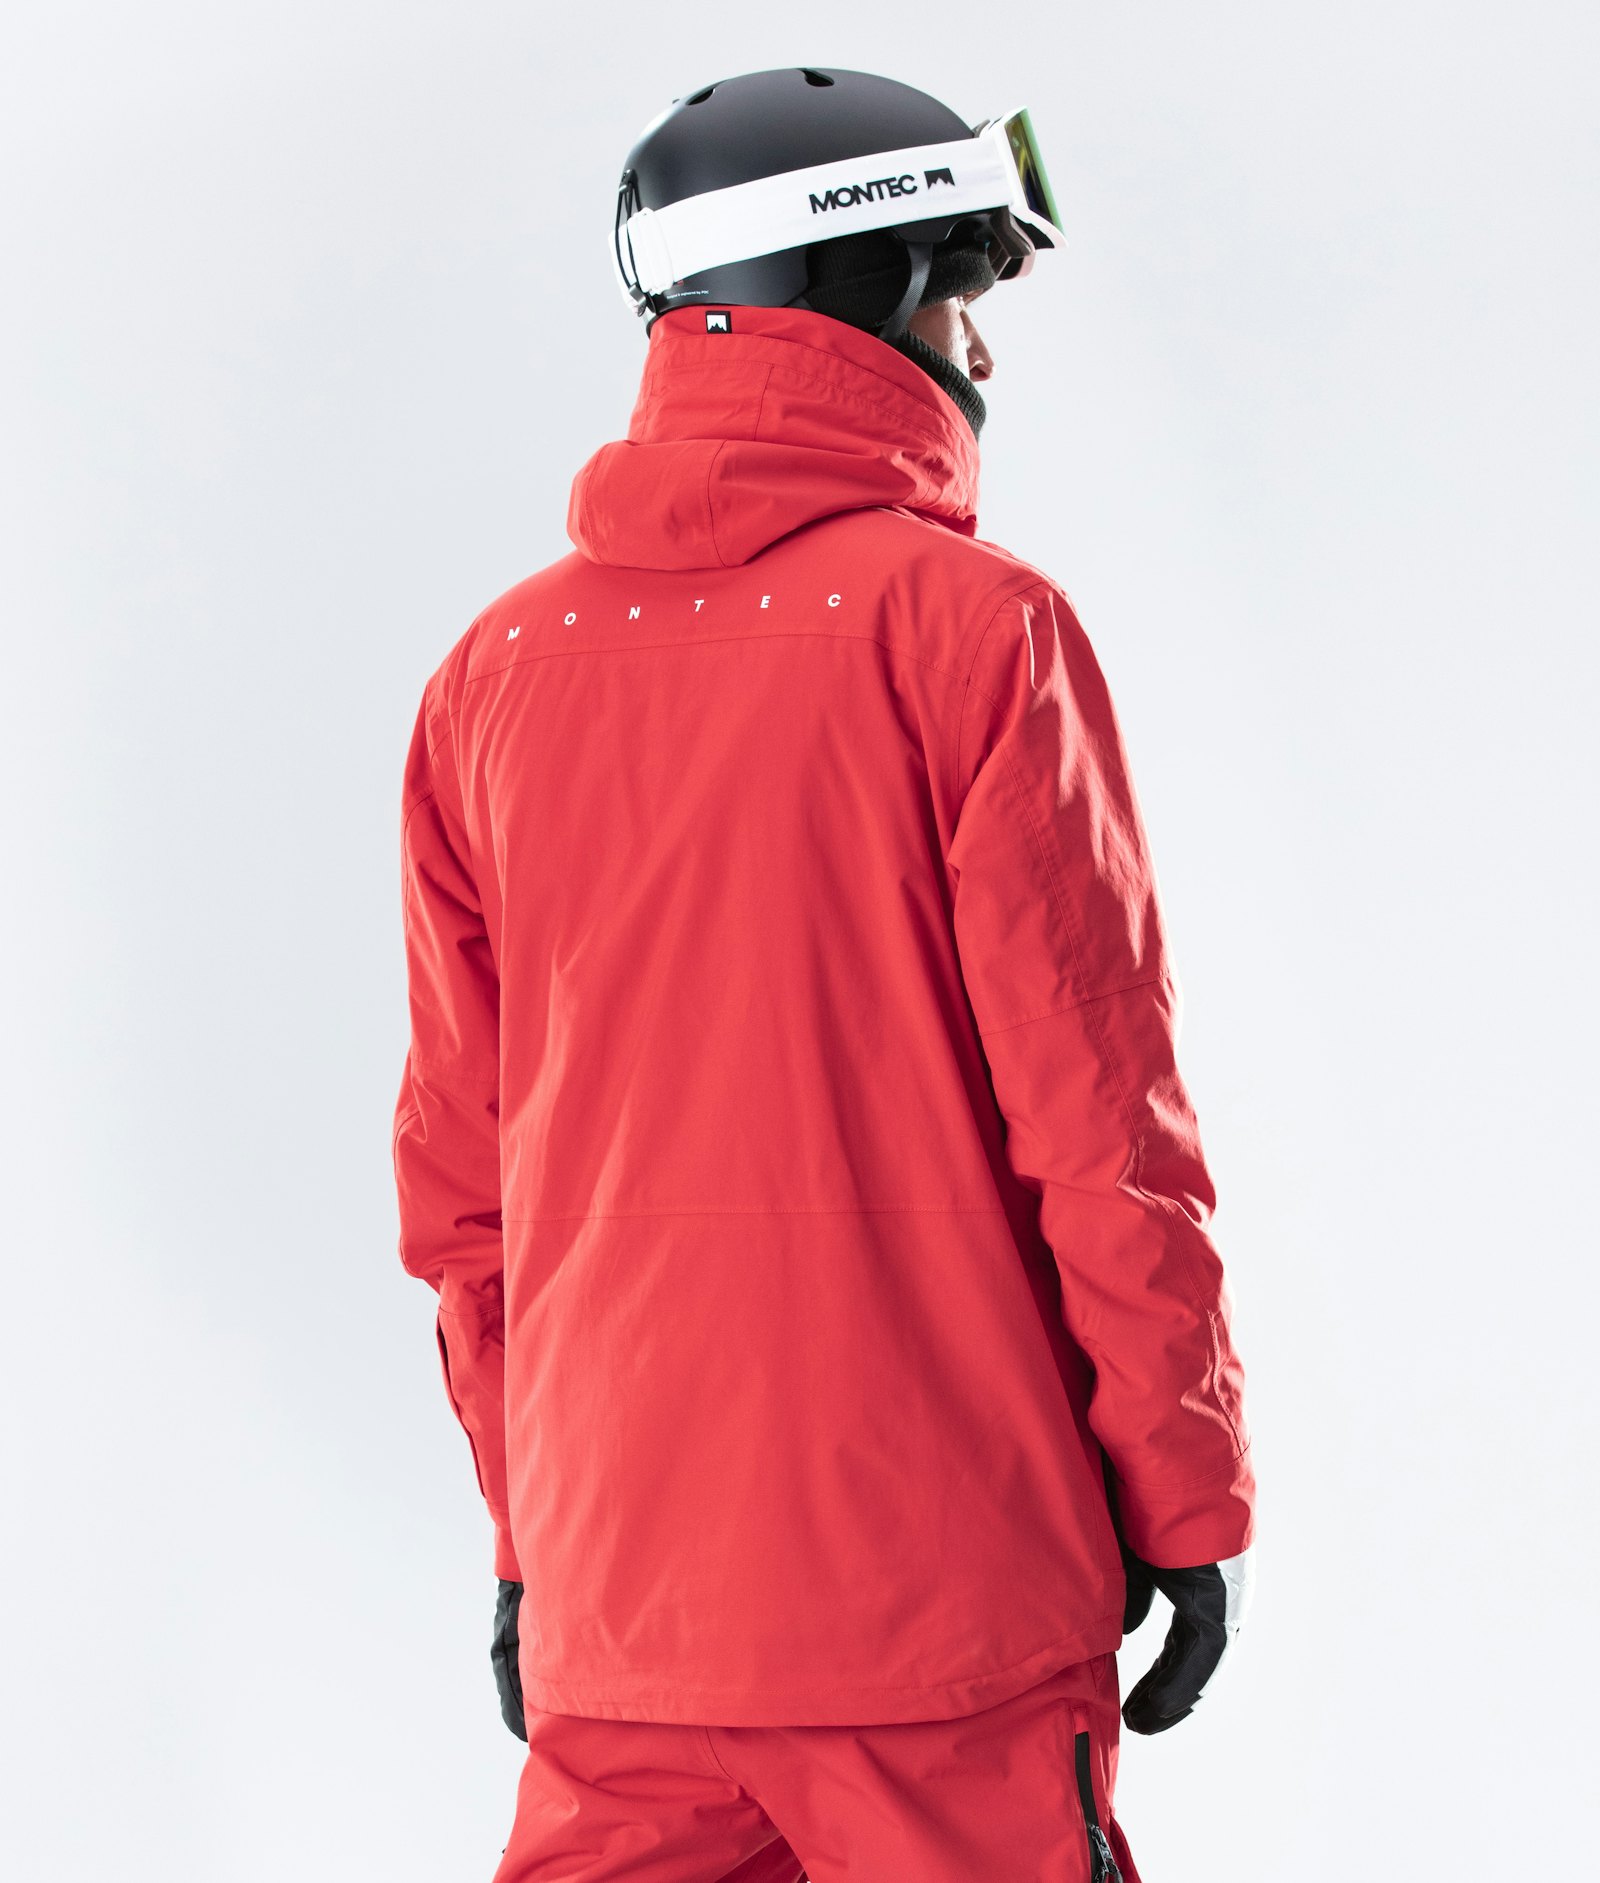 Fawk 2020 Veste Snowboard Homme Red